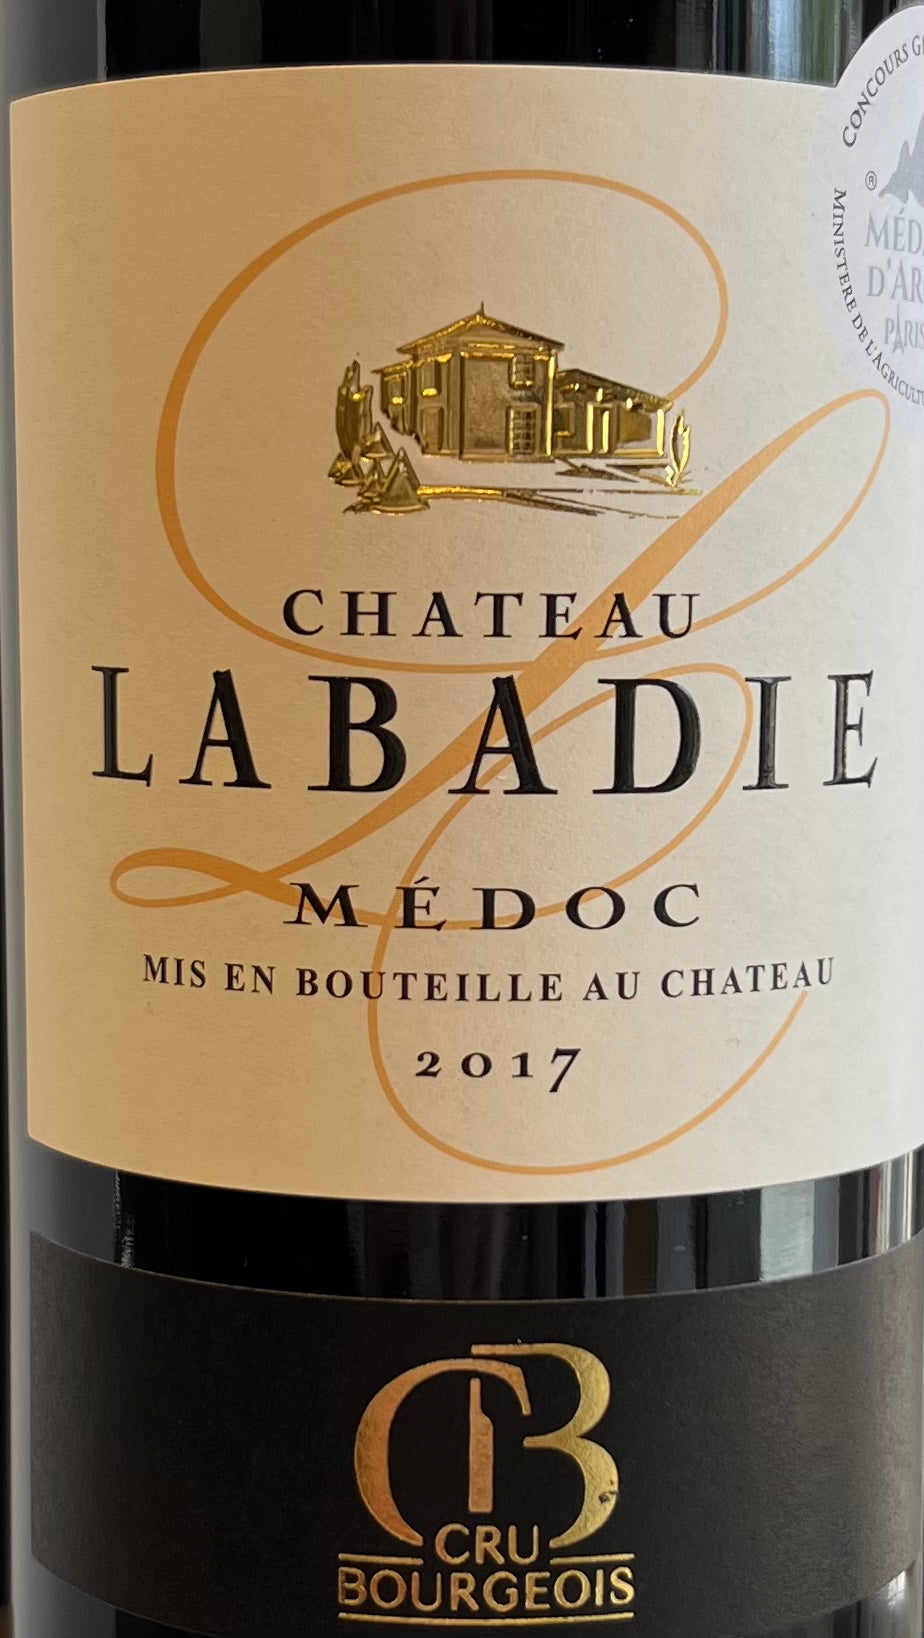 Chateau Labadie - Medoc - Cru Bourgeois